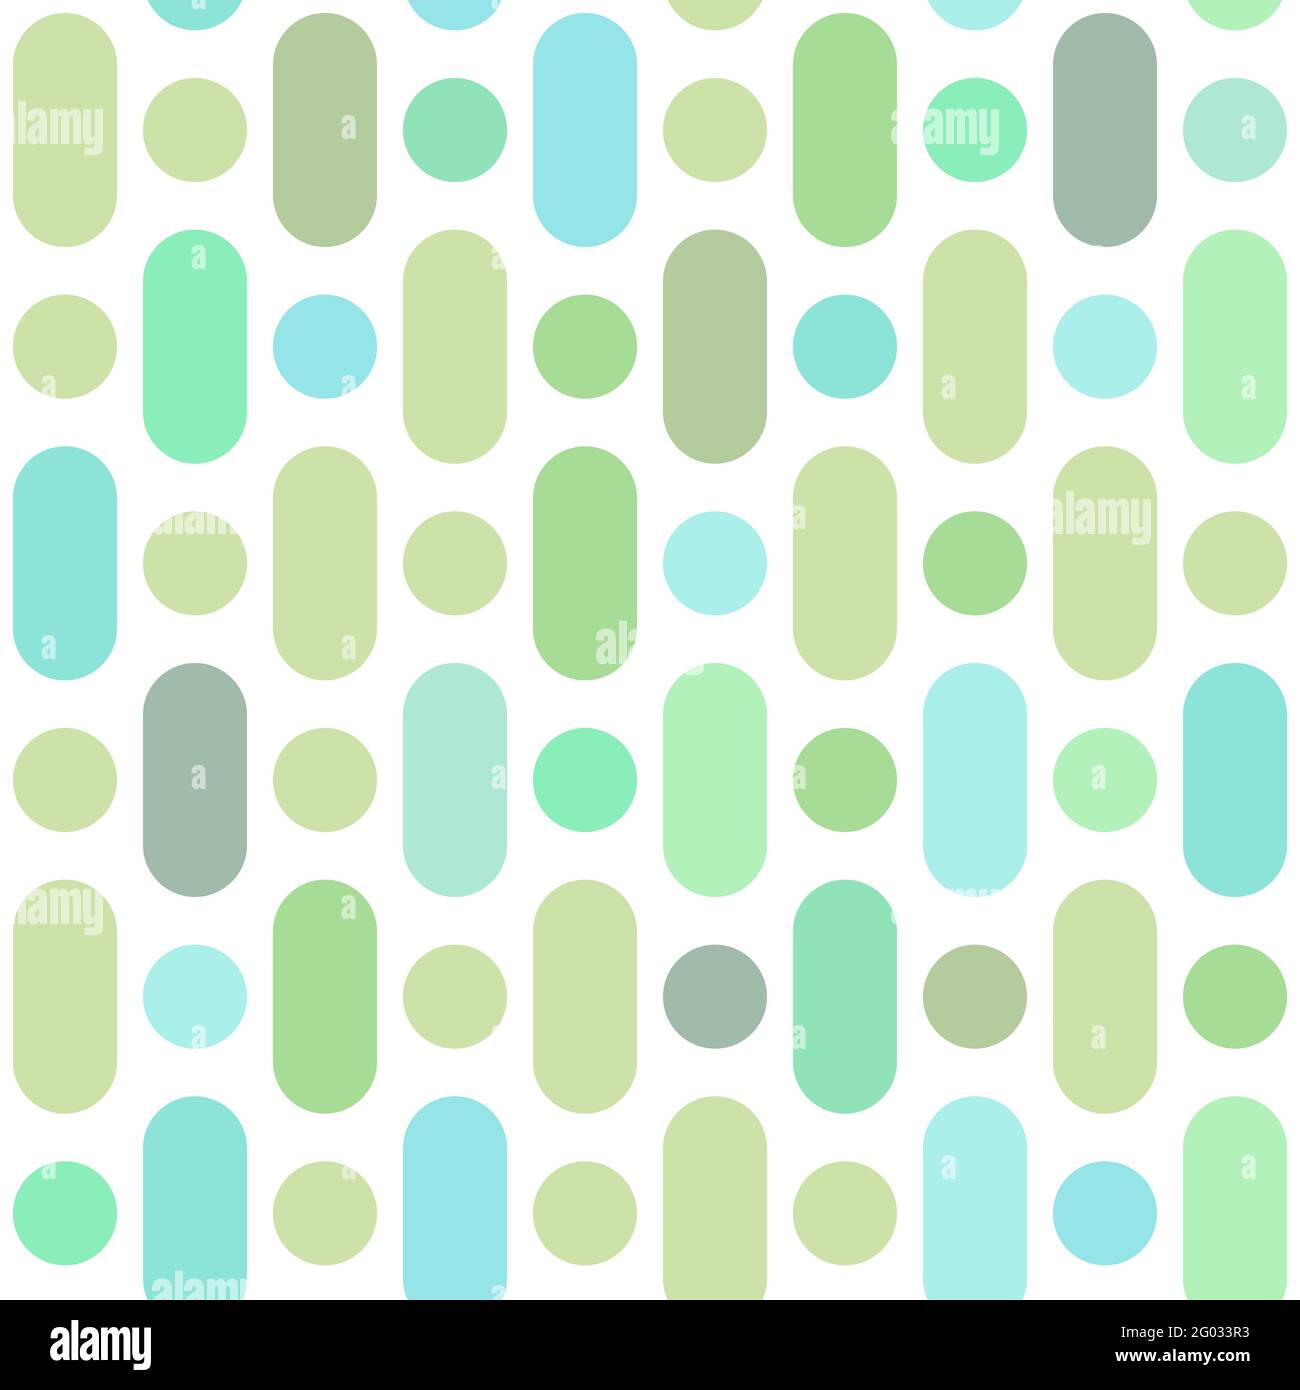 Vektor einfache grüne Striche und Punkte nahtlose Muster Hintergrund. Wiederholende Textur für Stoff, Tapete, Scrapbooking, Karte, Einladungen oder Verpackung. Stock Vektor